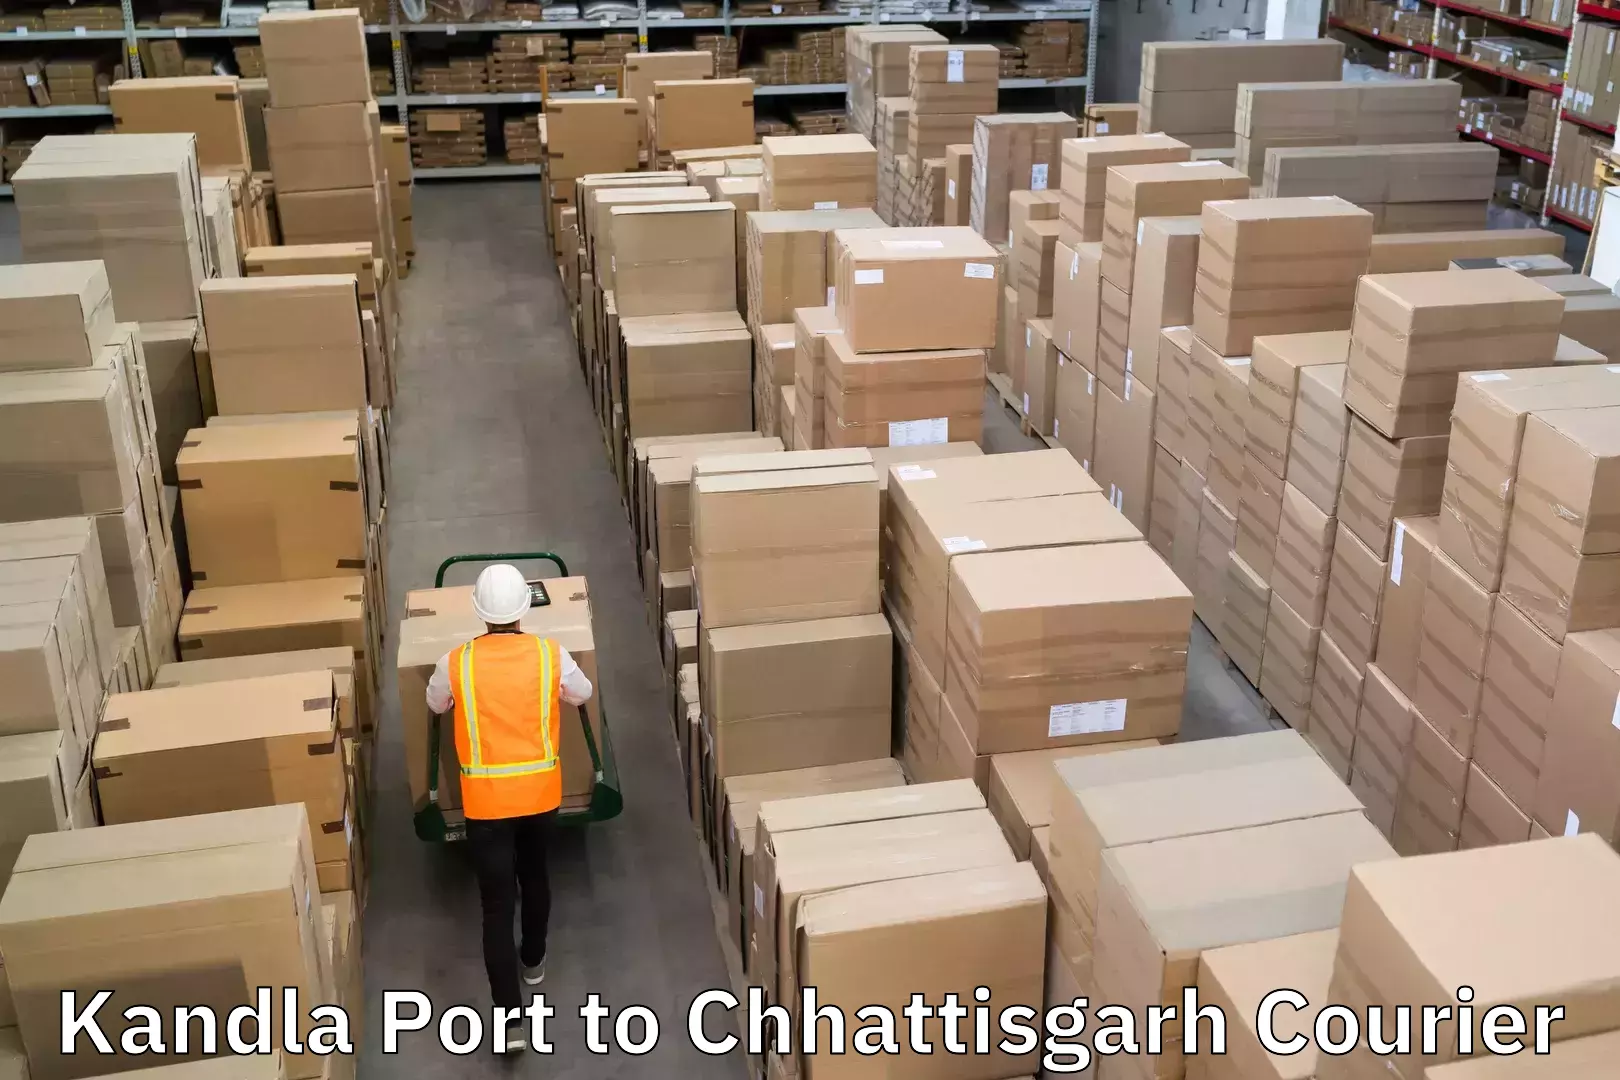 Efficient parcel transport Kandla Port to Chhattisgarh